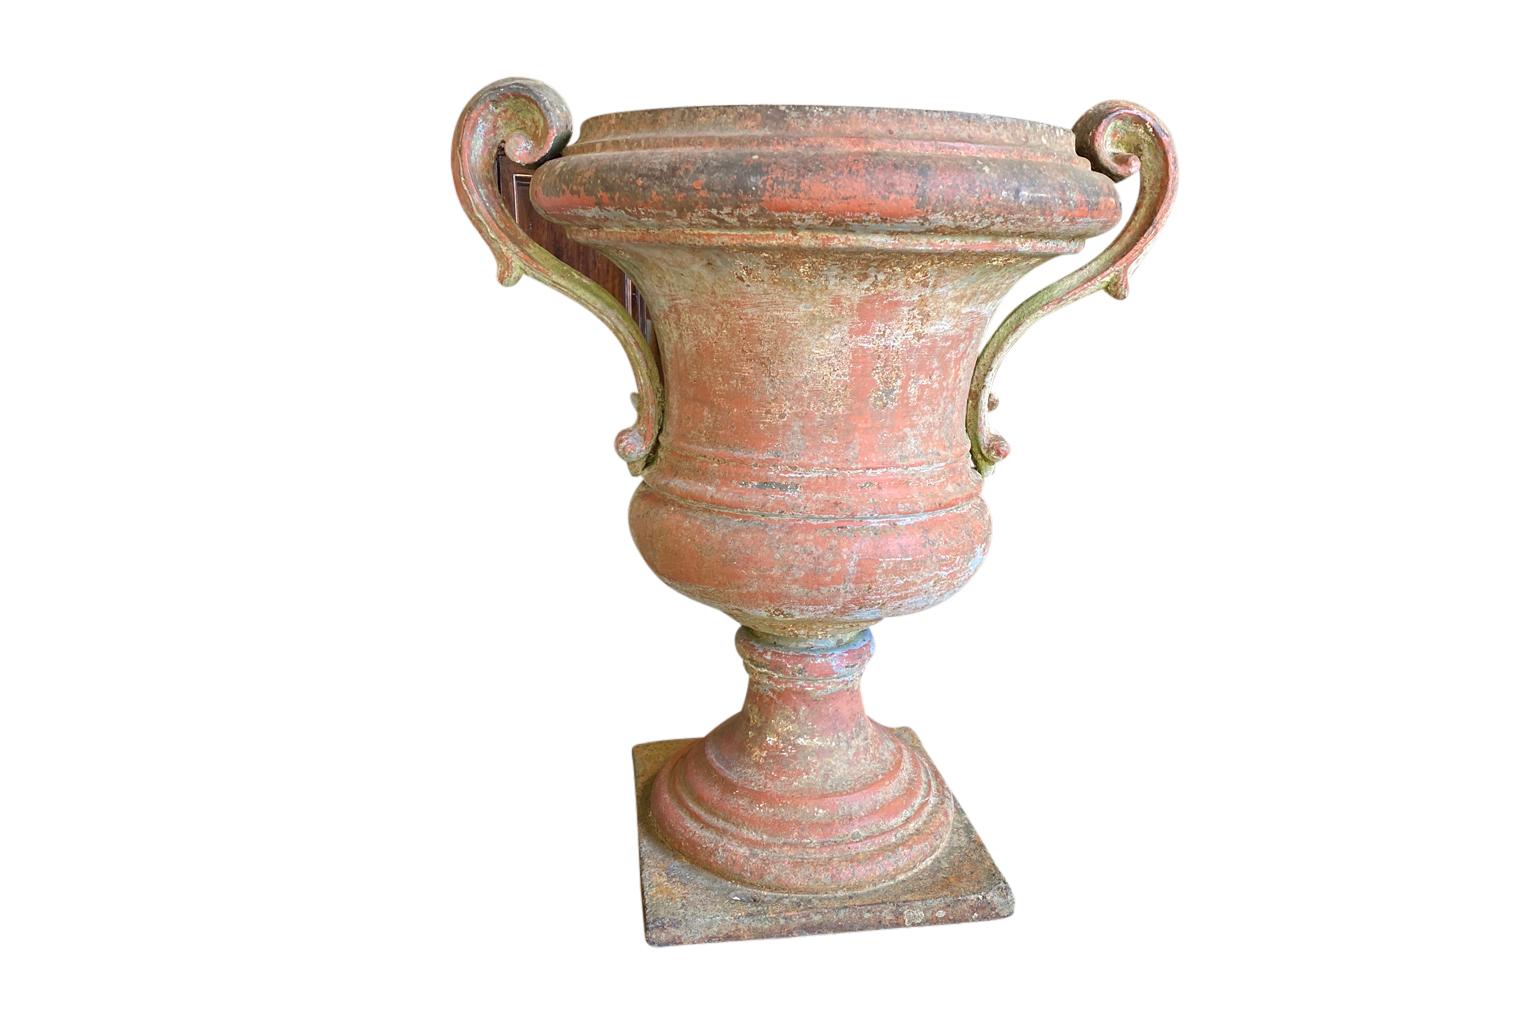 Eine beeindruckende Medeci-Urne aus dem 18. Jahrhundert aus Florenz, Italien. Wunderschön in Eisen gegossen mit einer sehr schönen Oberfläche in Siena- und hellen Moosgrüntönen. Wunderbare minimalistische Linien mit hervorragender Patina. Perfekt